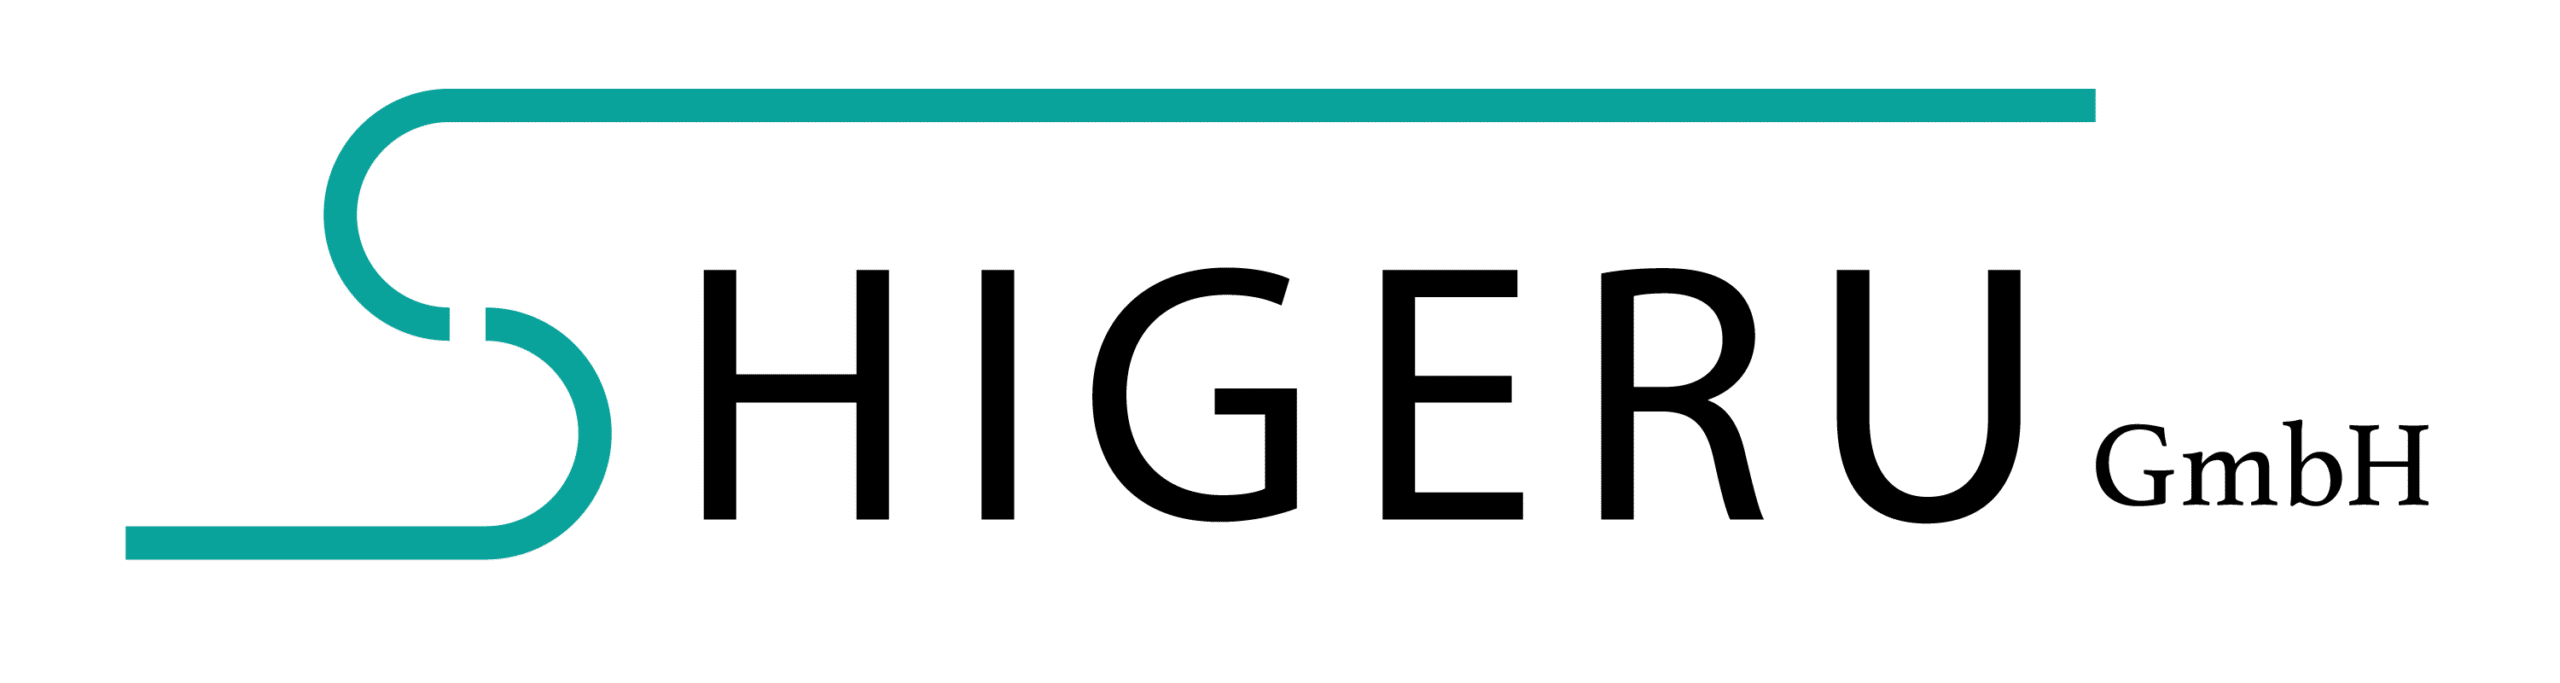 Shigeru GmbH